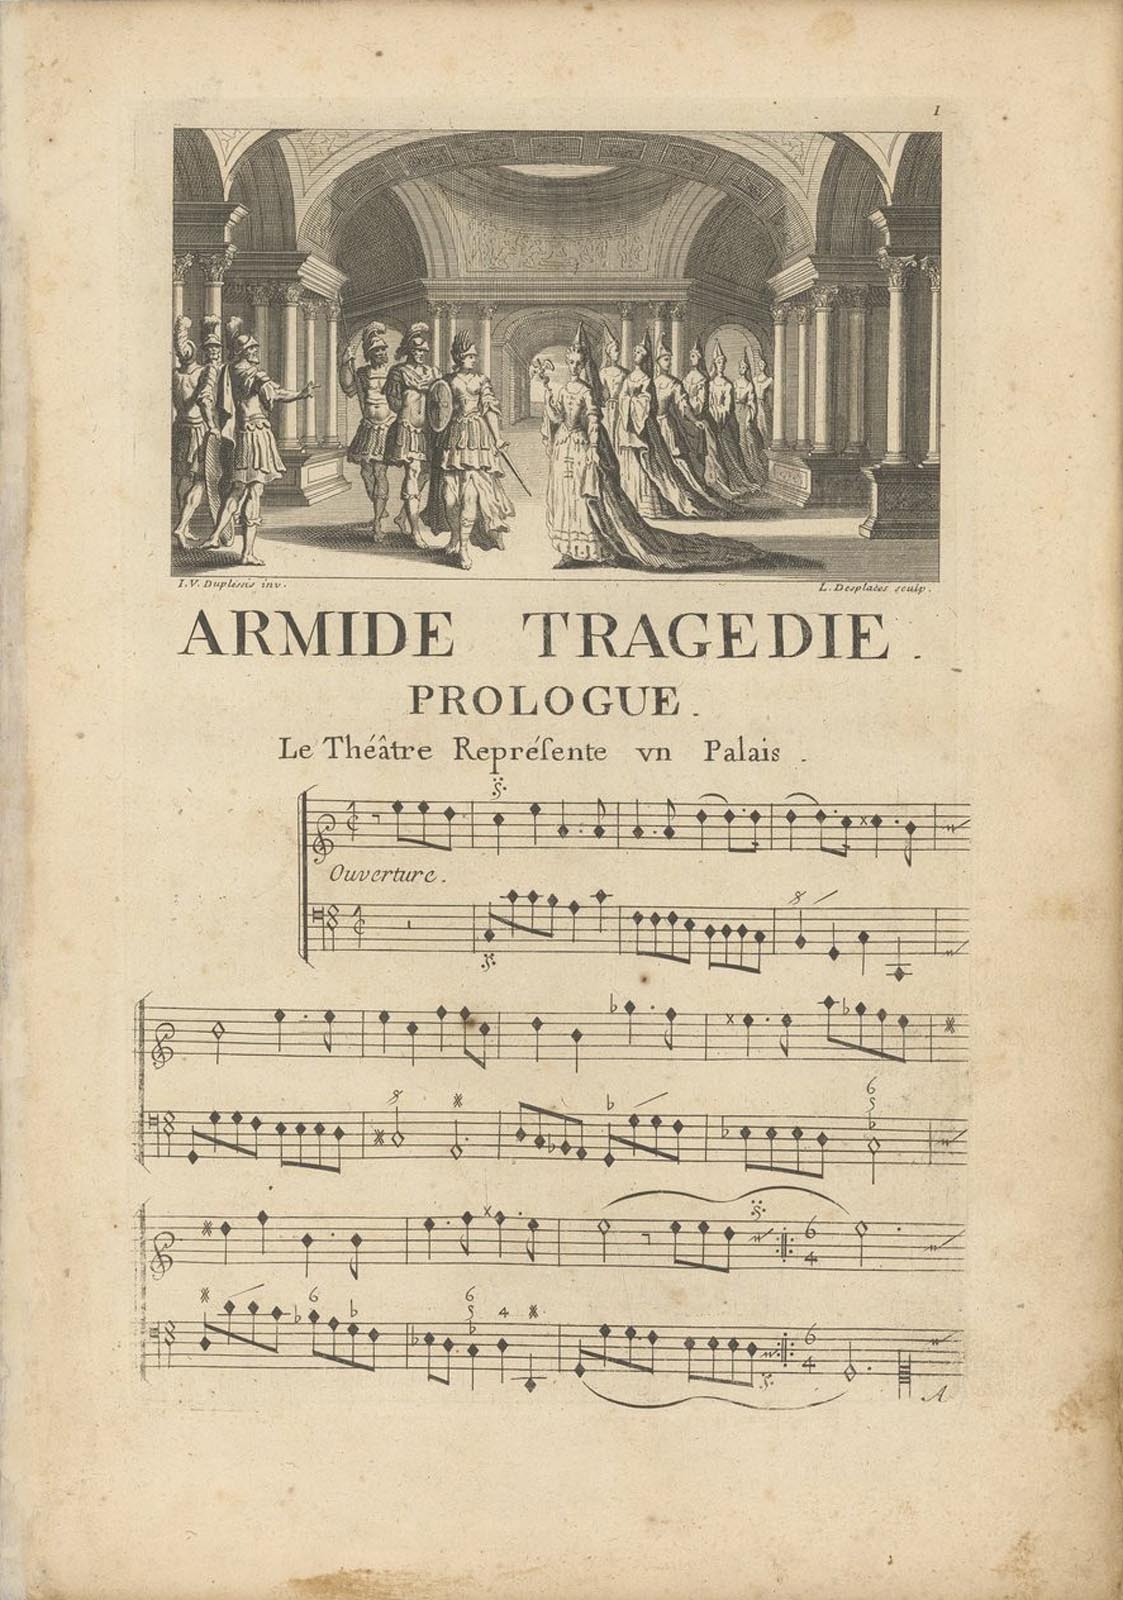 Partition du prologue de l'opéra Armide de Jean-Baptiste Lully